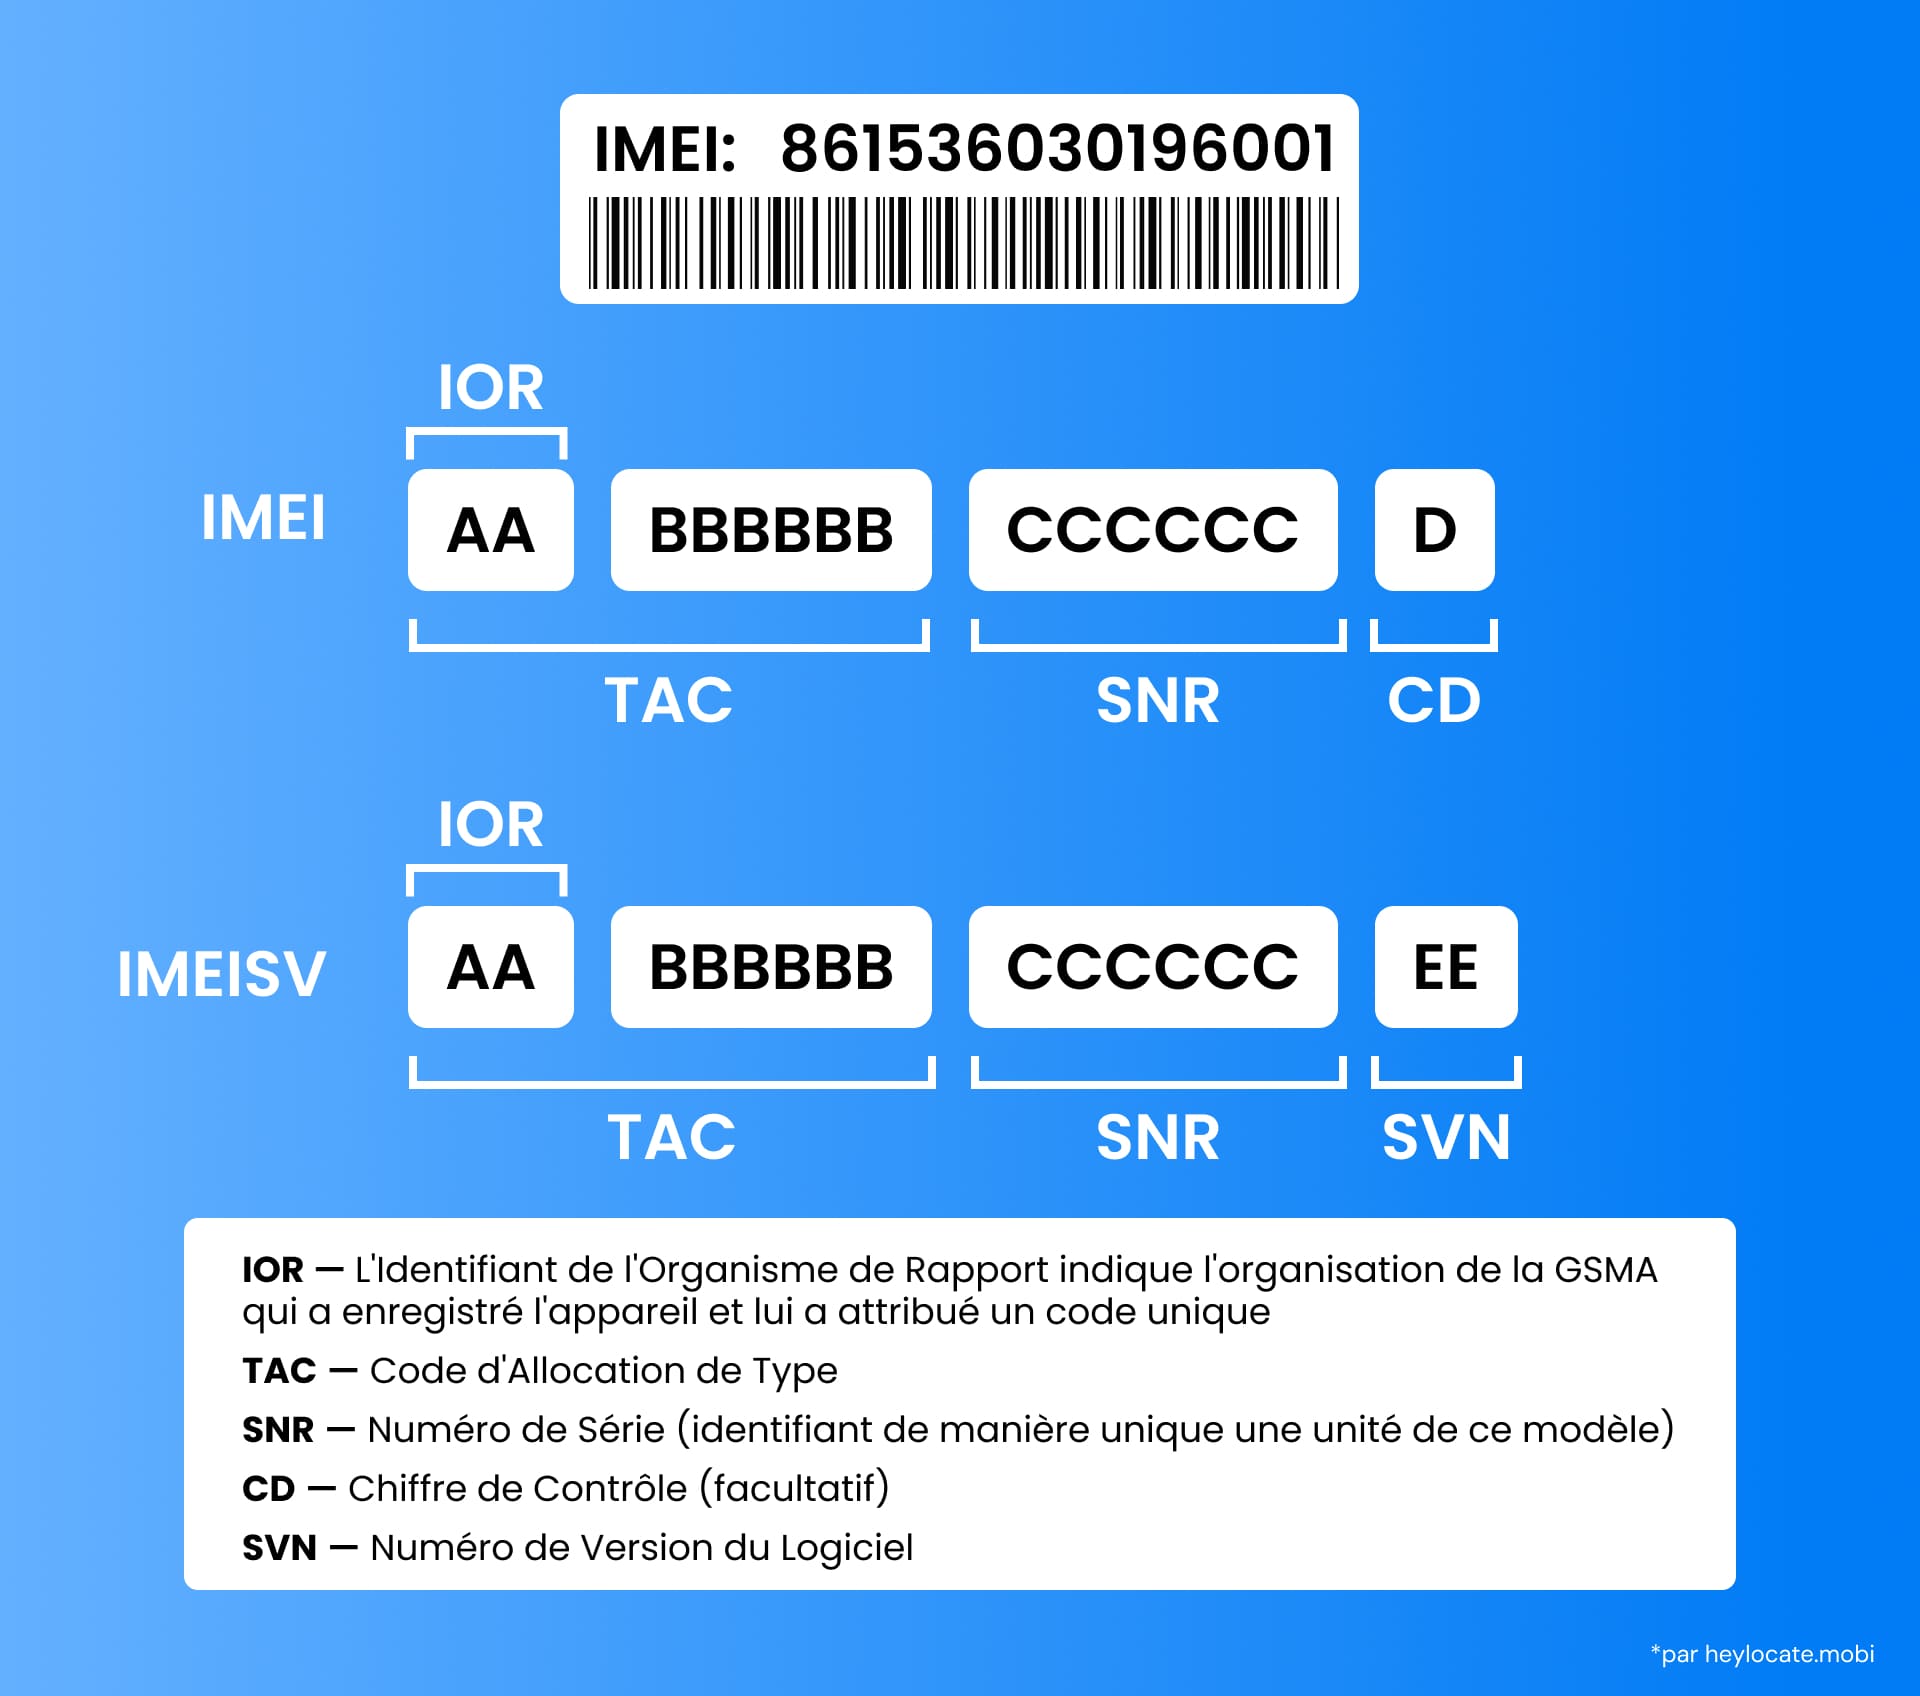 Diagramme expliquant la structure des numéros IMEI et IMEISV, y compris des éléments tels que TAC, SNR, SVN et CD.